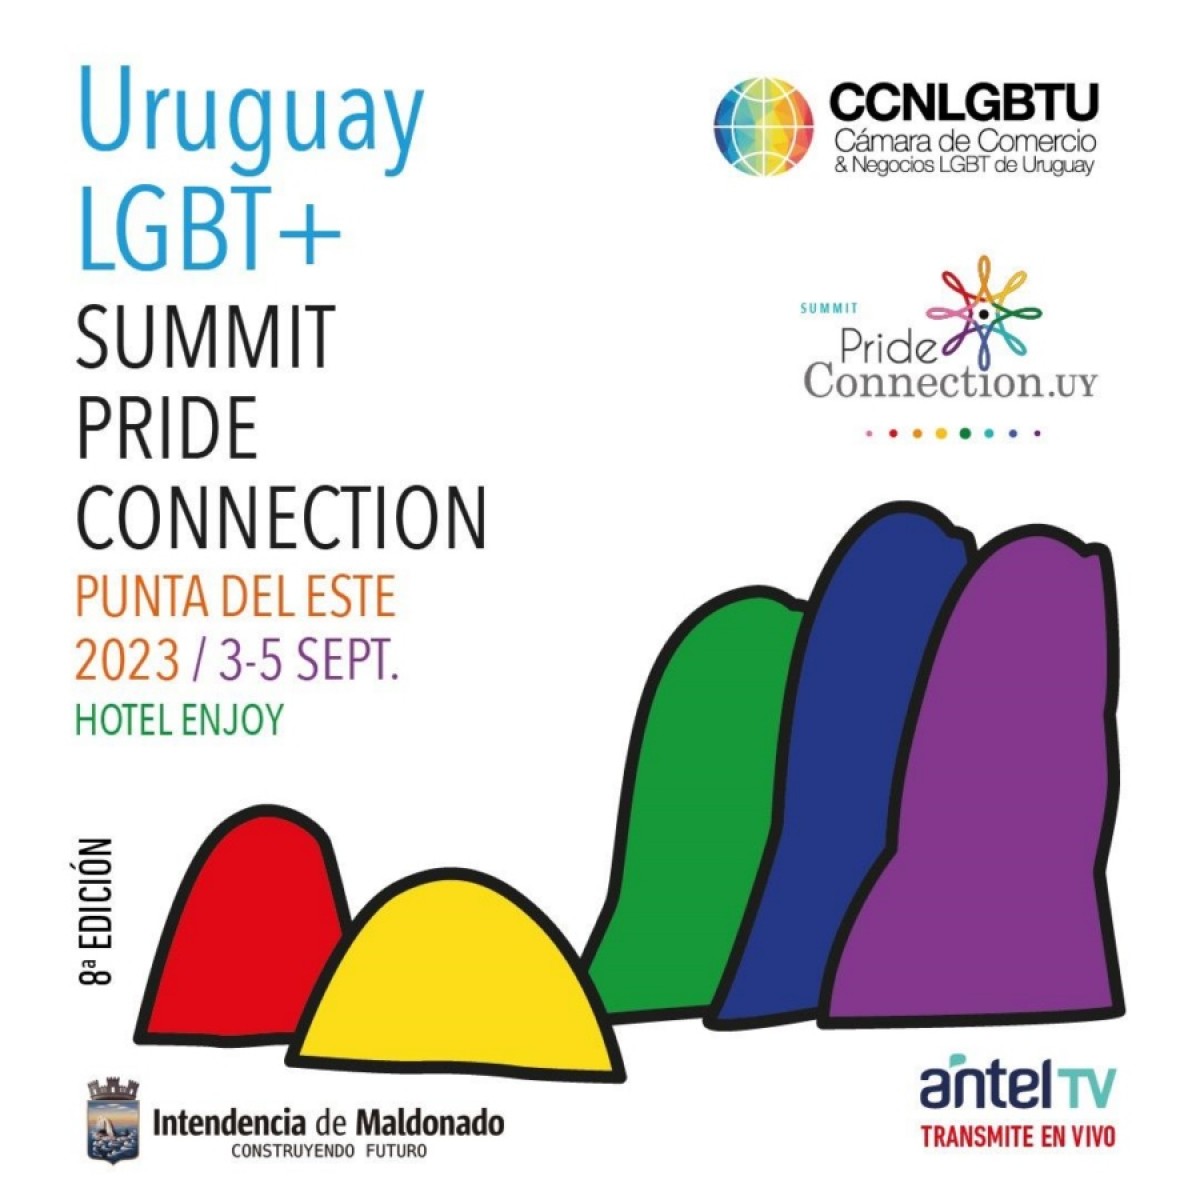 Uruguay LGBT+ Summit Pride Connection Punta del Este 2023